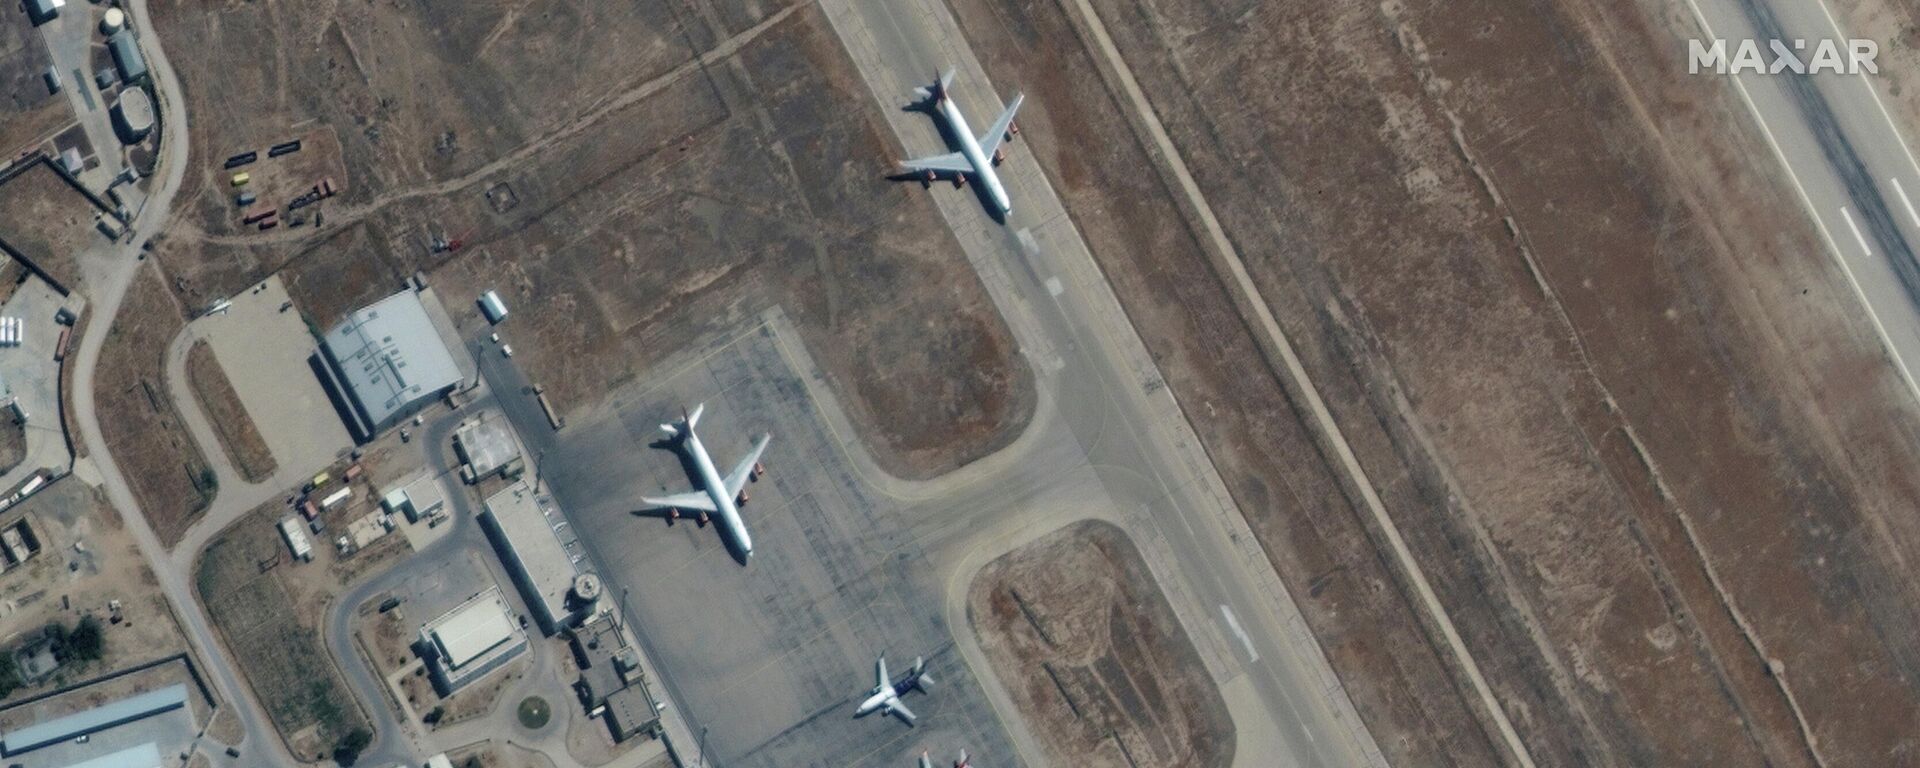 Afganistan'ın kuzeyindeki Mezar-ı Şerif havaalanında tahliye için bekleyen 6 uçak - Sputnik Türkiye, 1920, 06.09.2021